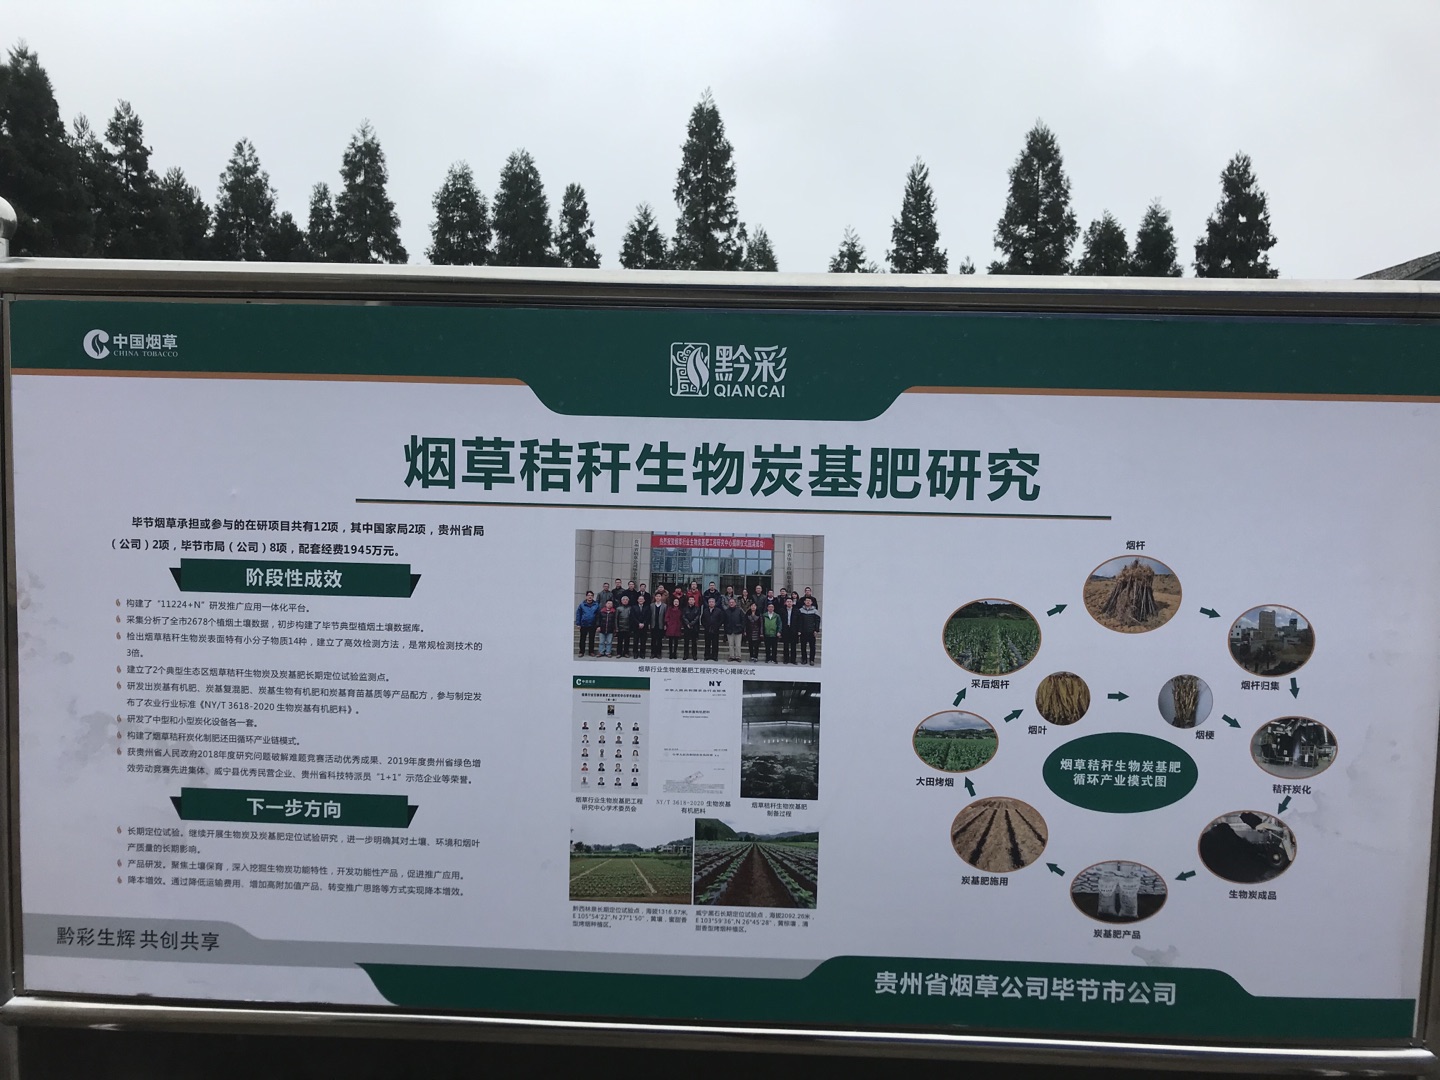 中國煙葉公司、國家局科技司領導一行人參觀考察時科貴州炭基肥生產基地